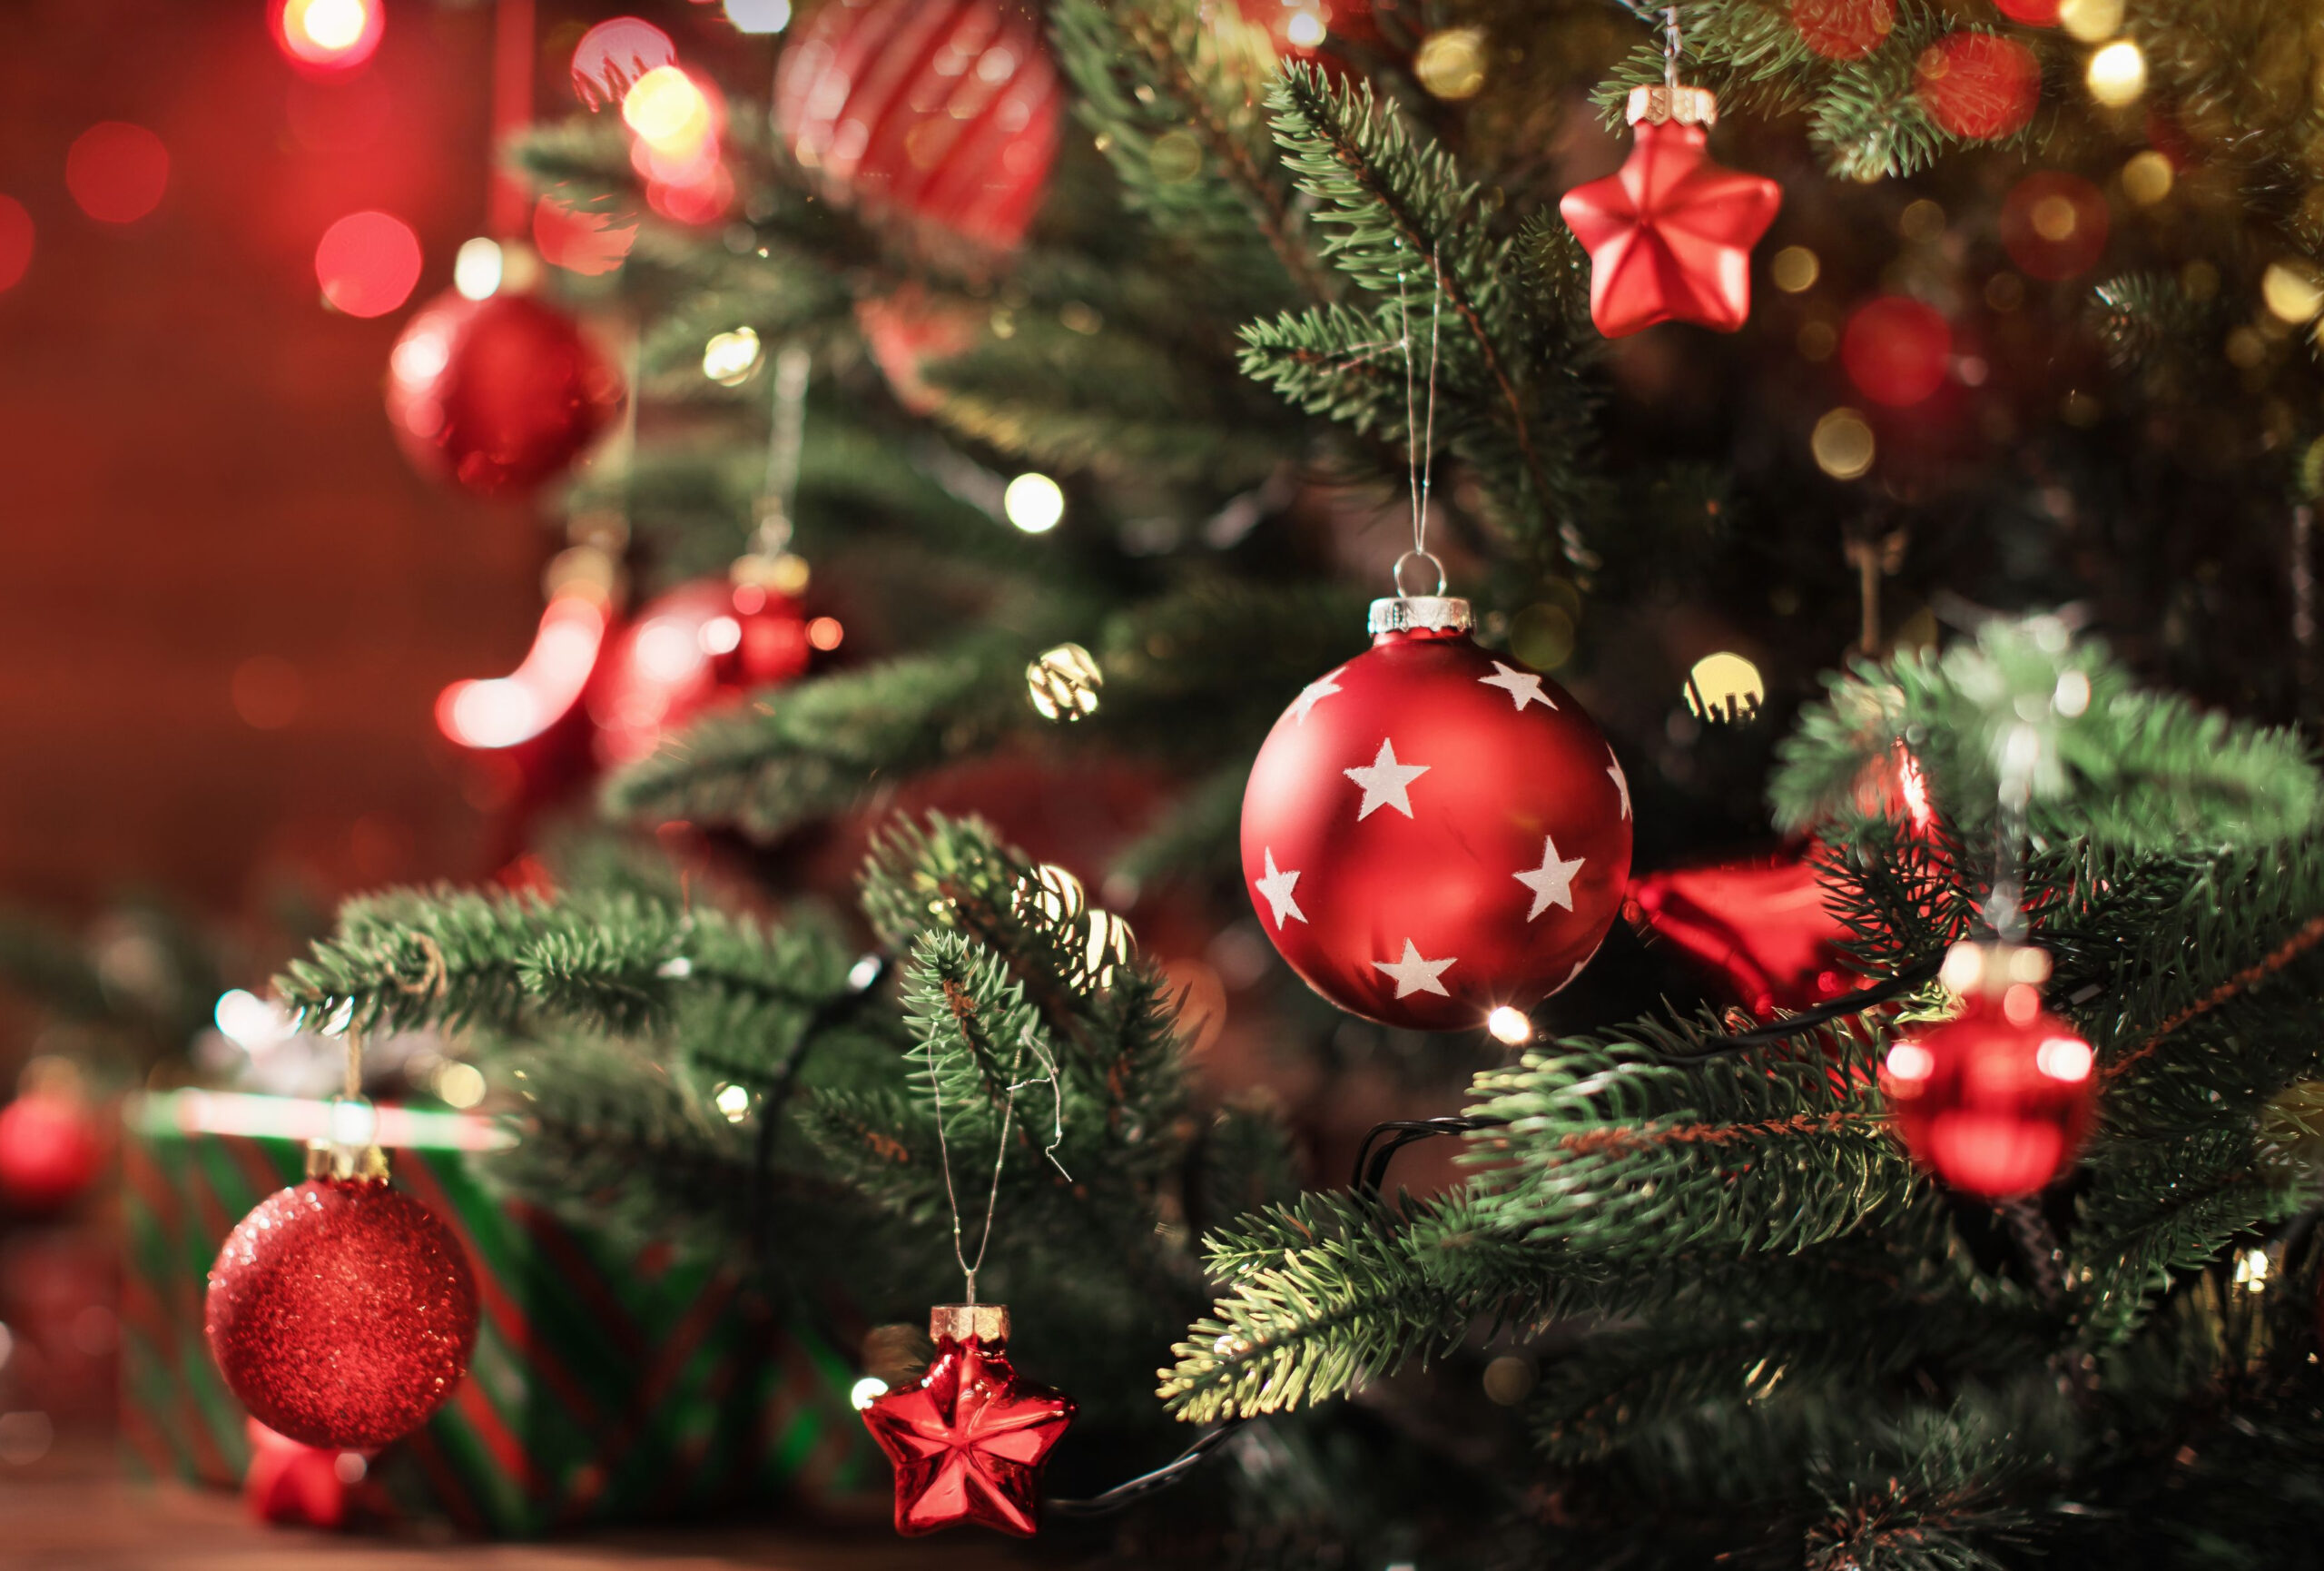 Fotografi av juletre med dekorasjoner og lys